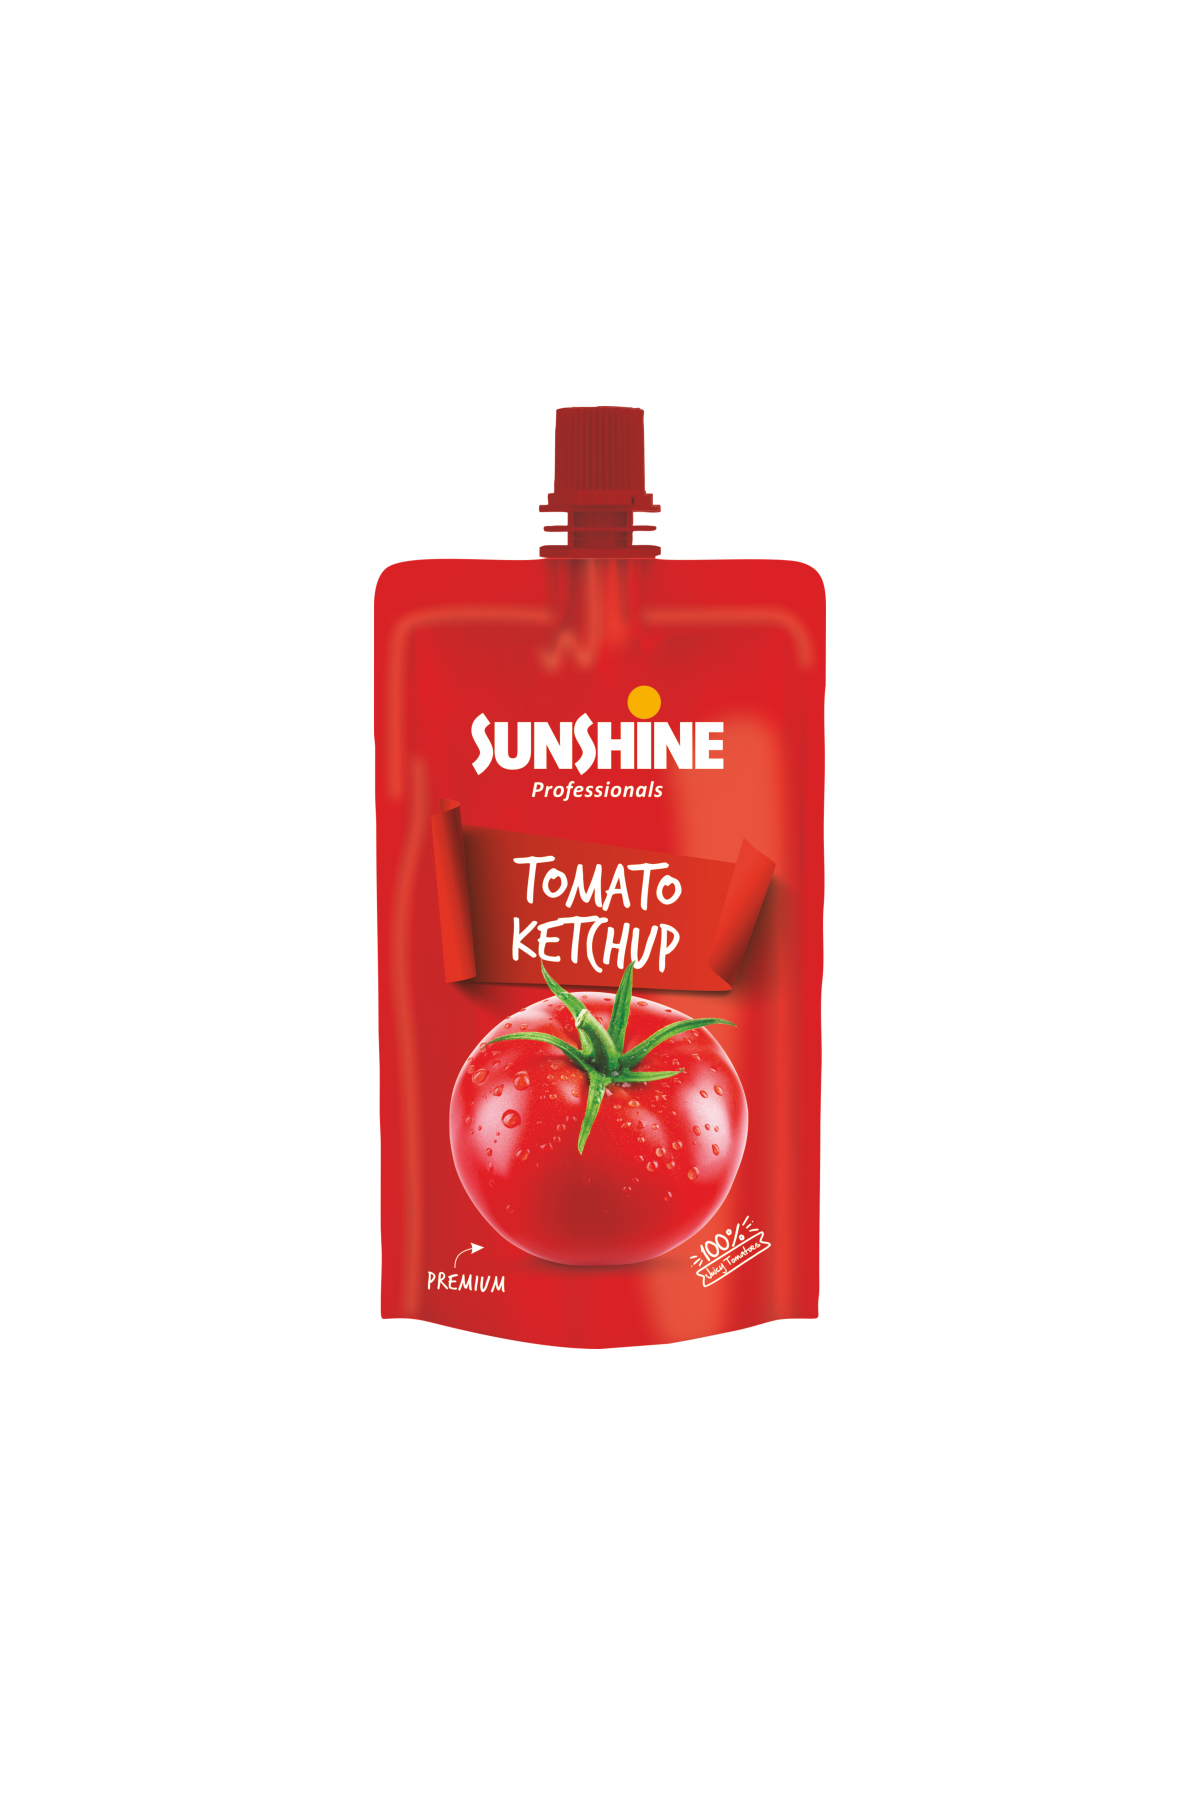 Tomato Ketchup Premium 90G